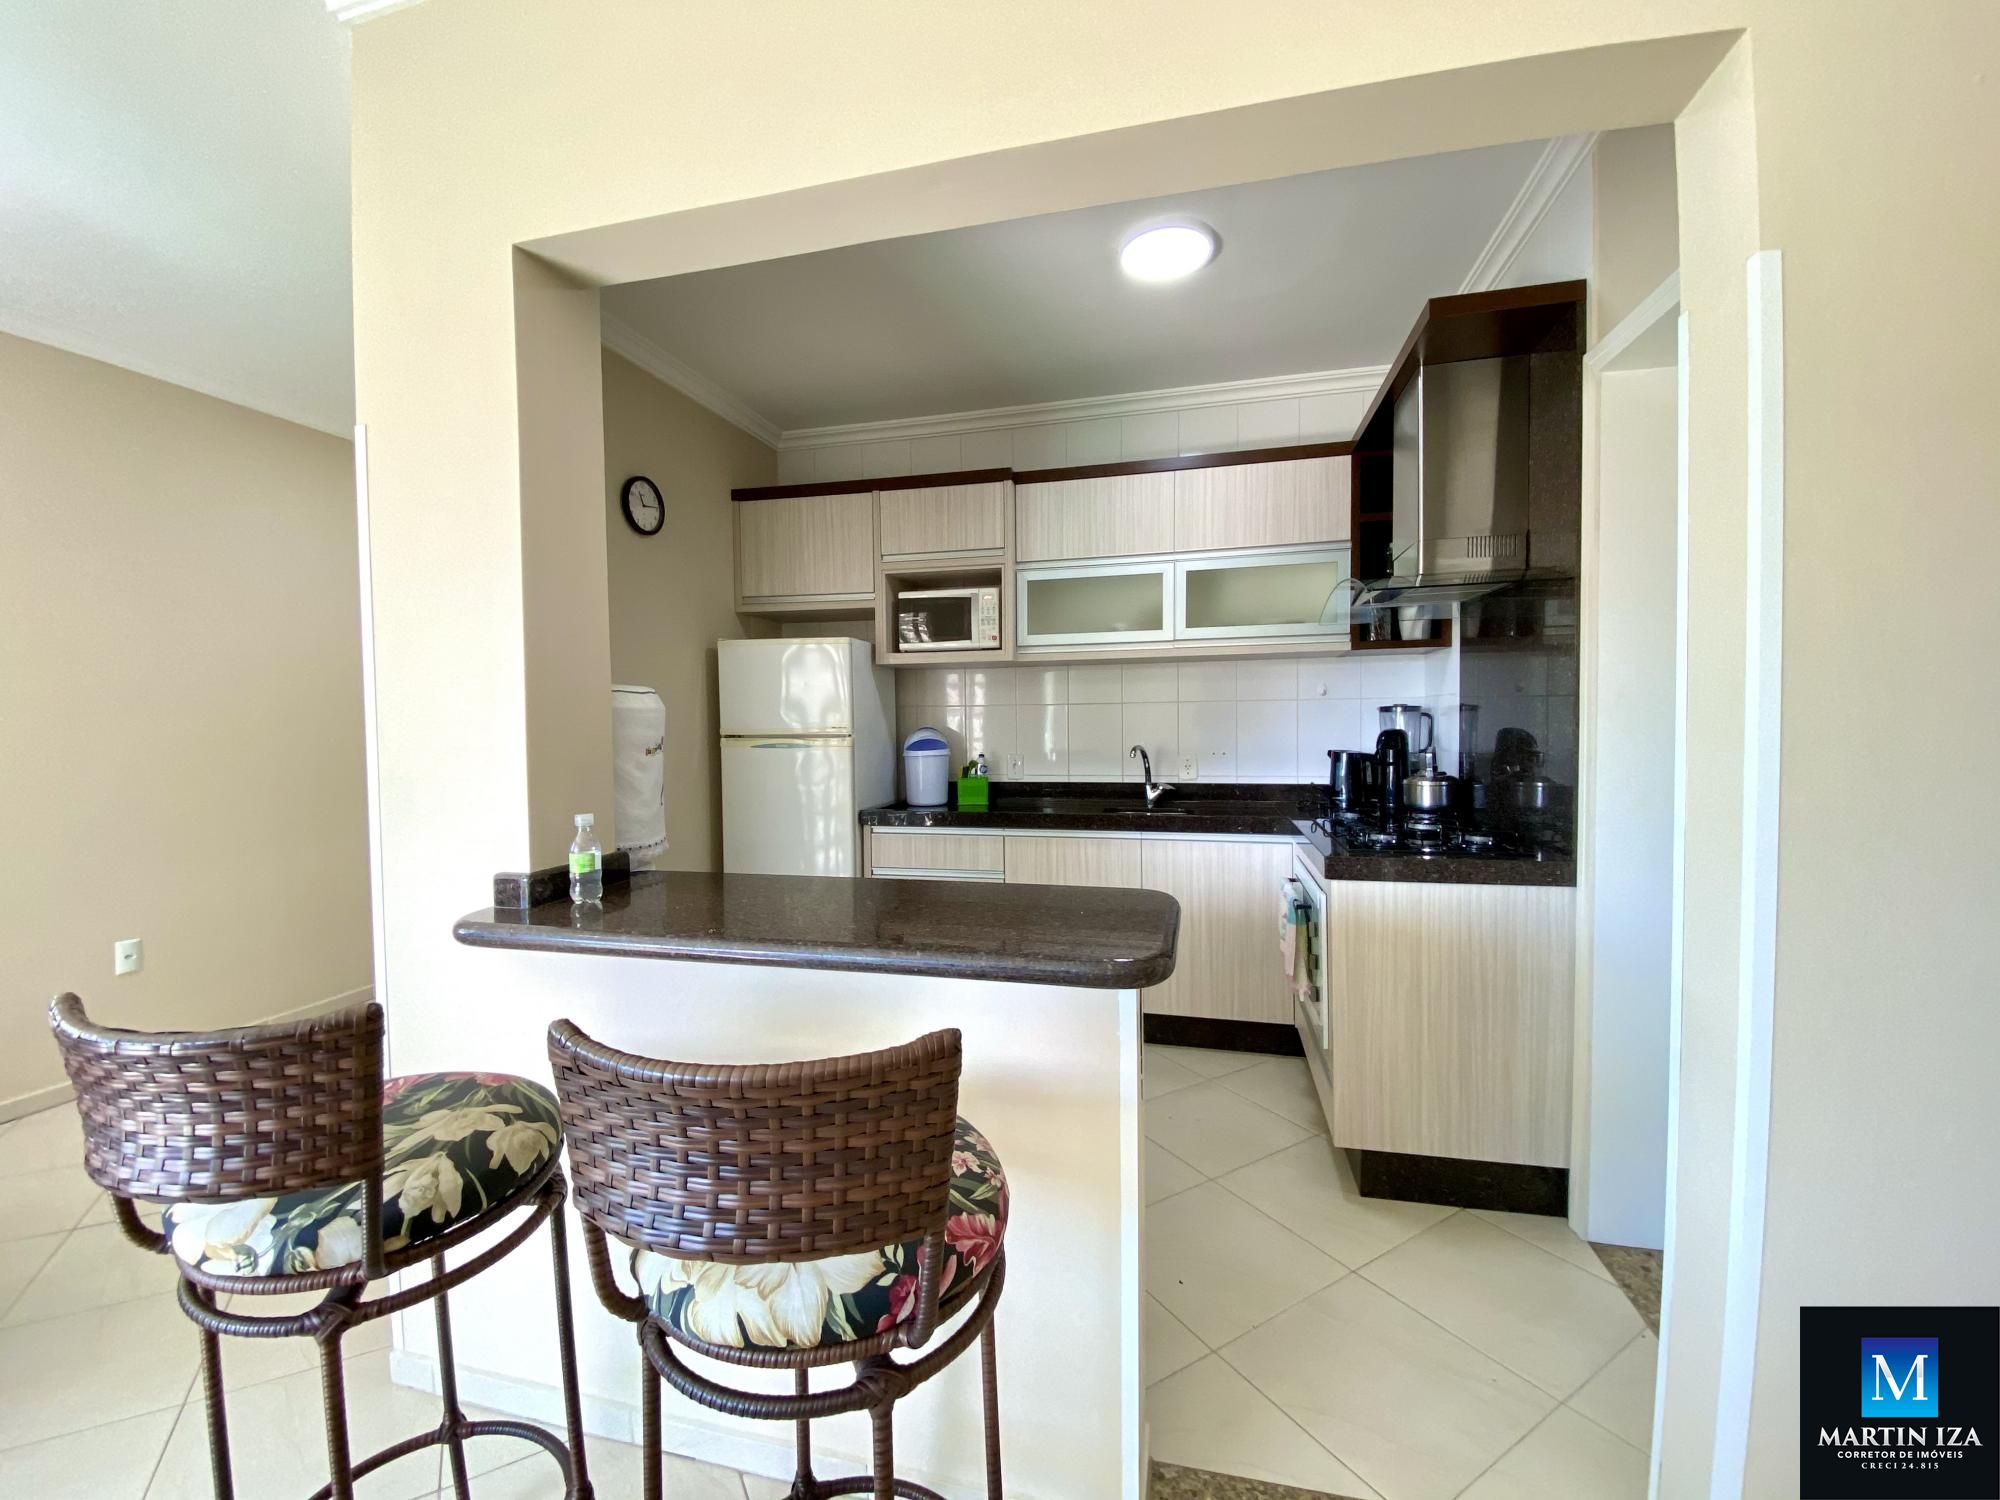 Apartamento com 3 Dormitórios para alugar, 110 m² por R$ 550,00